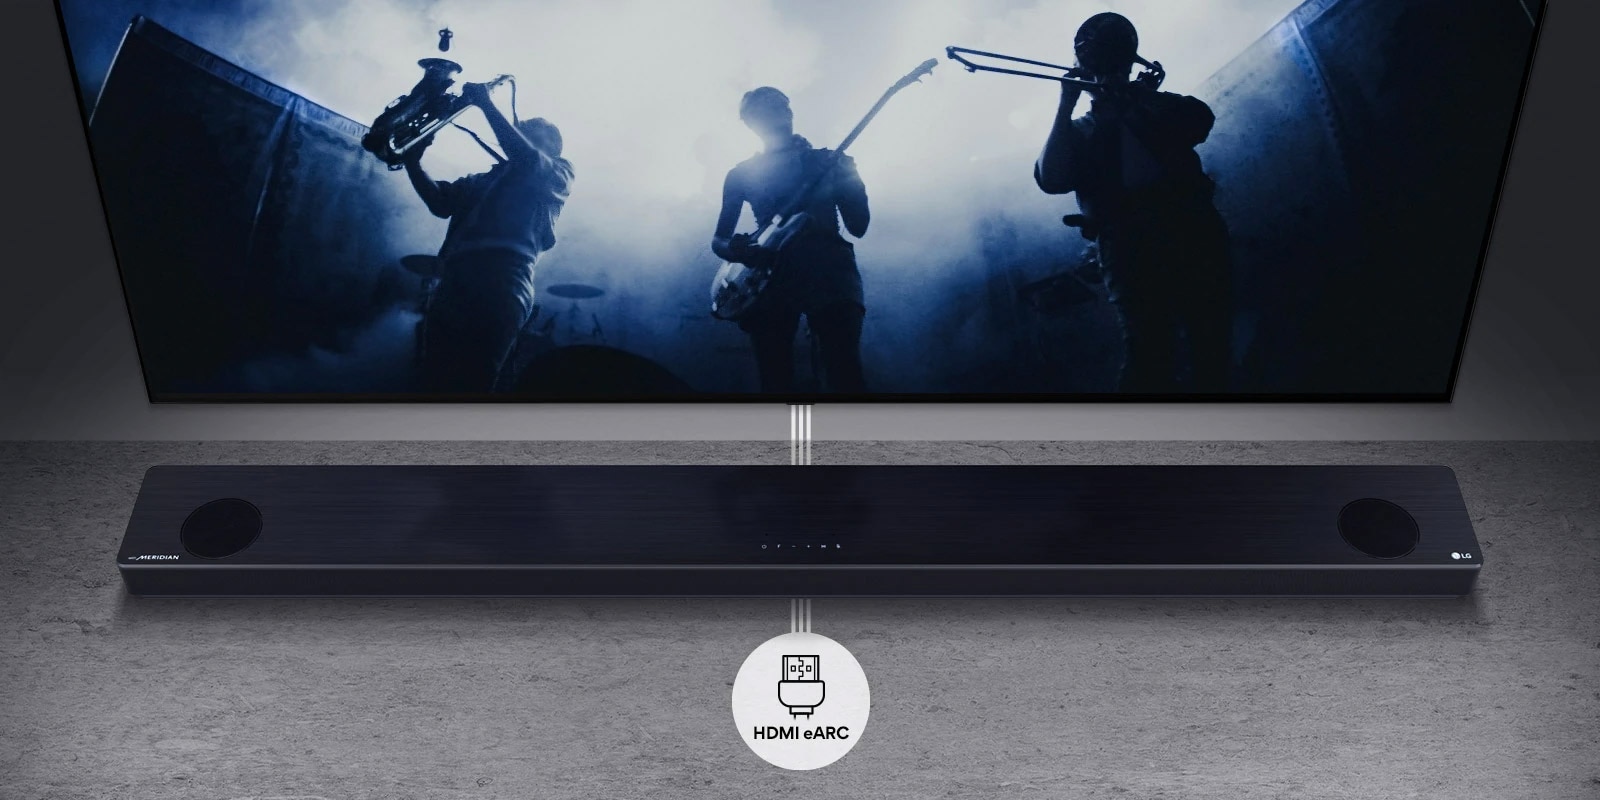 TV treo trên tường. TV thể hiện bóng màu đen của ban nhạc. LG Soundbar nằm ngay bên dưới TV trên kệ màu xám. Biểu tượng HDMI eARC bên dưới loa soundbar.